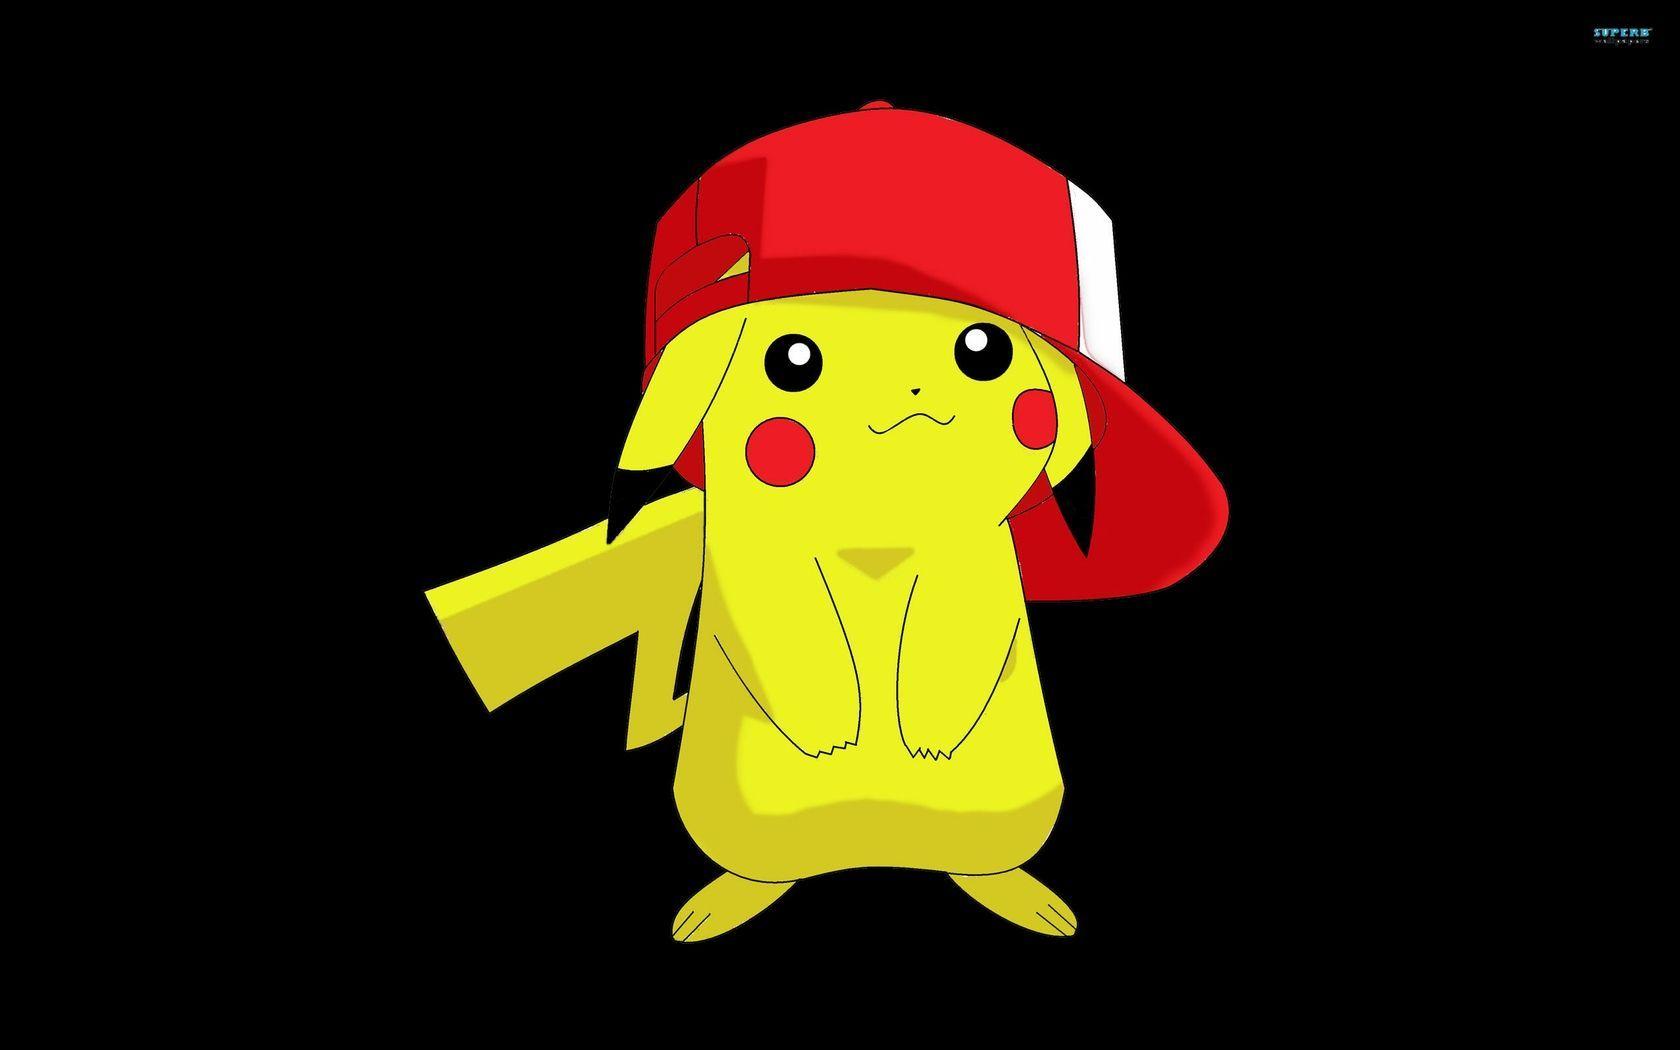 99+] Pikachu HD Wallpapers - WallpaperSafari